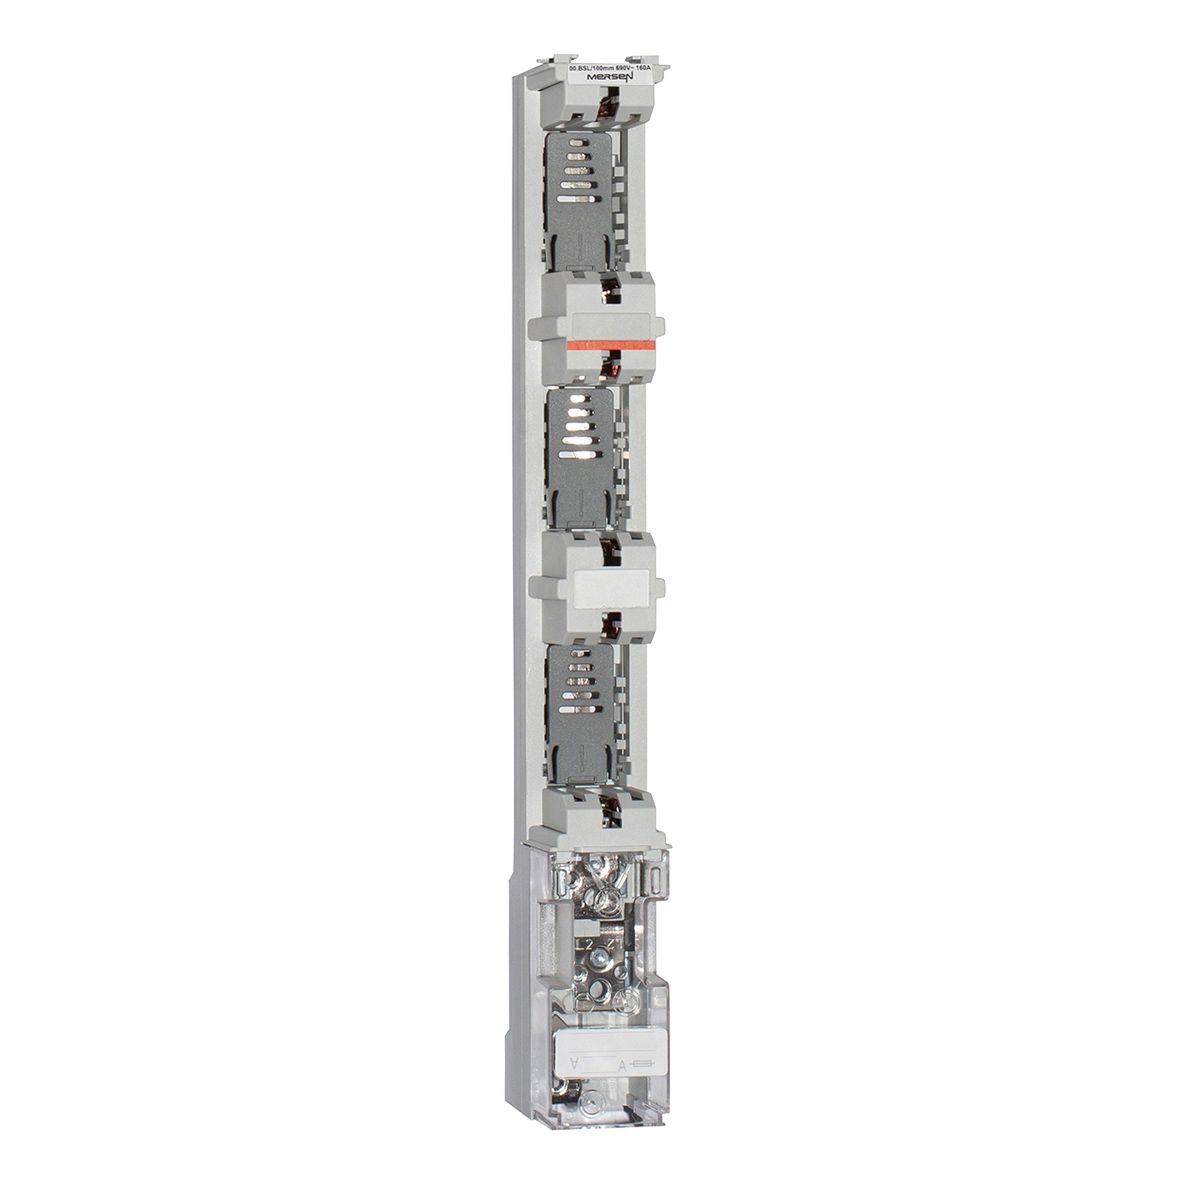 R1002286 - NH-vertical fuse rail BSL 160A/100mm M8 terminal screws